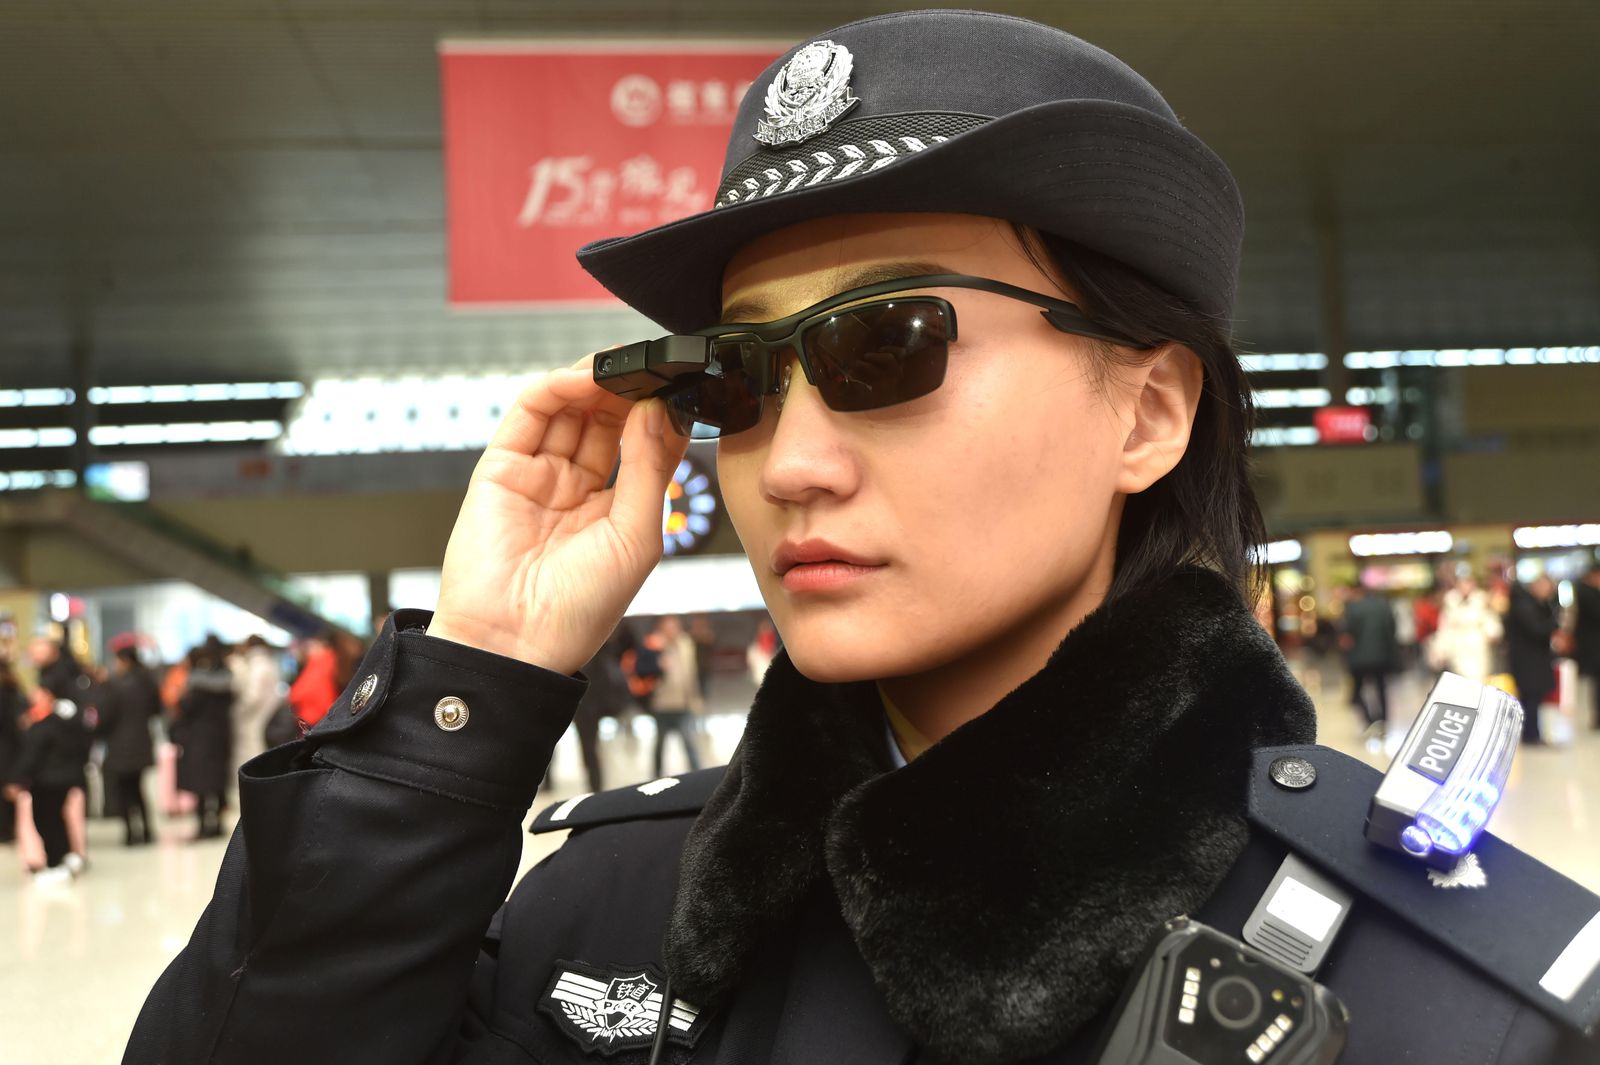 Polícia chinesa tem óculos com reconhecimento facial para monitorar cidadãos